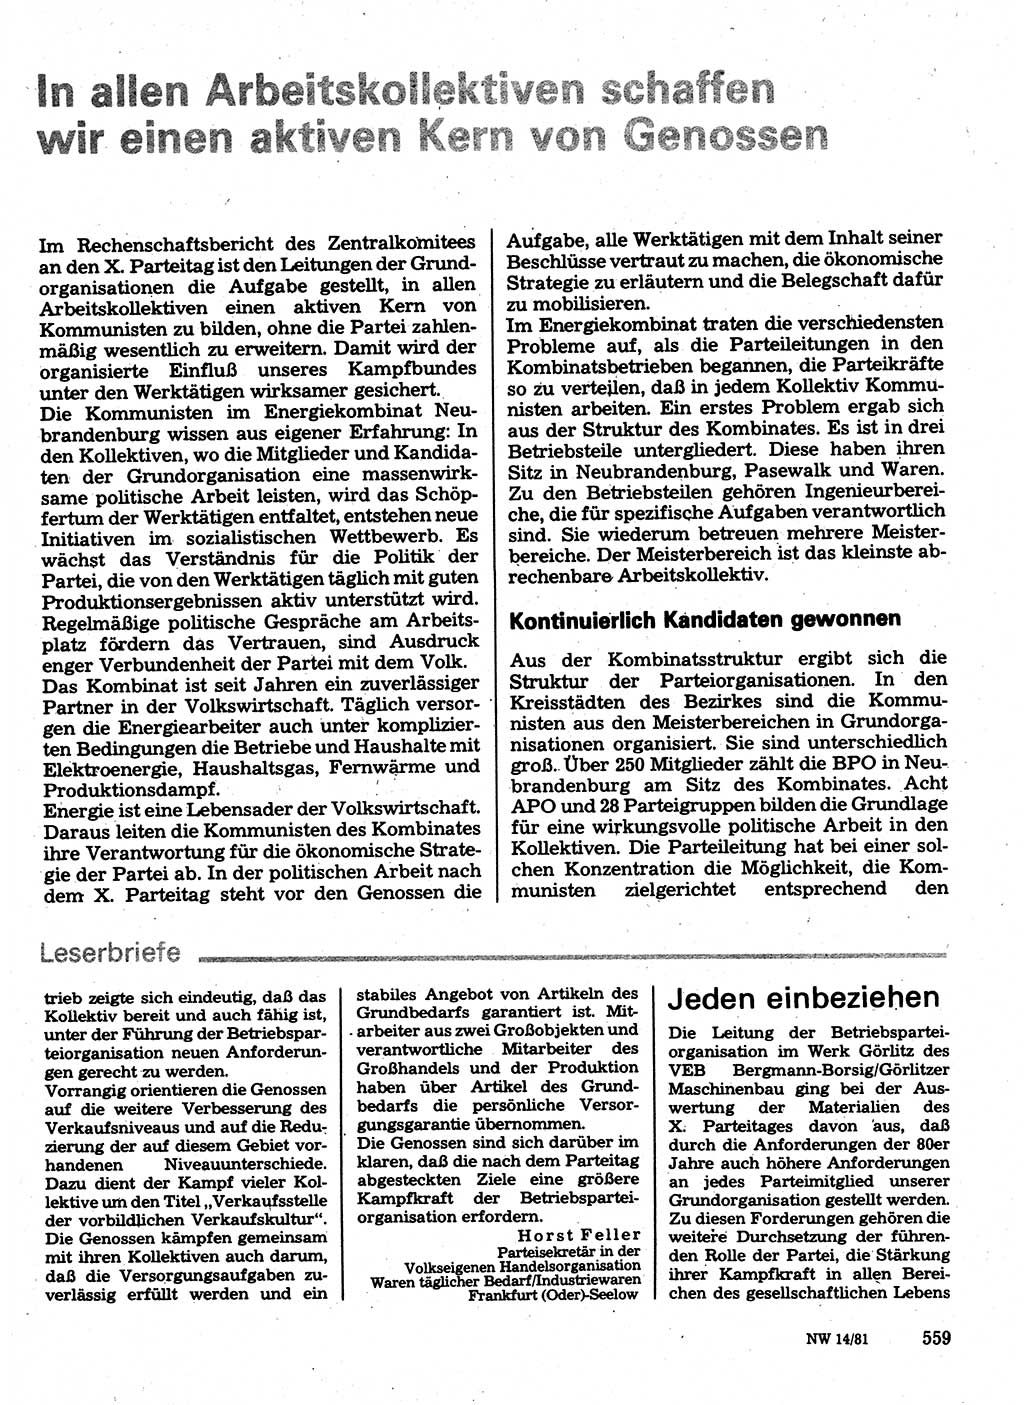 Neuer Weg (NW), Organ des Zentralkomitees (ZK) der SED (Sozialistische Einheitspartei Deutschlands) für Fragen des Parteilebens, 36. Jahrgang [Deutsche Demokratische Republik (DDR)] 1981, Seite 559 (NW ZK SED DDR 1981, S. 559)